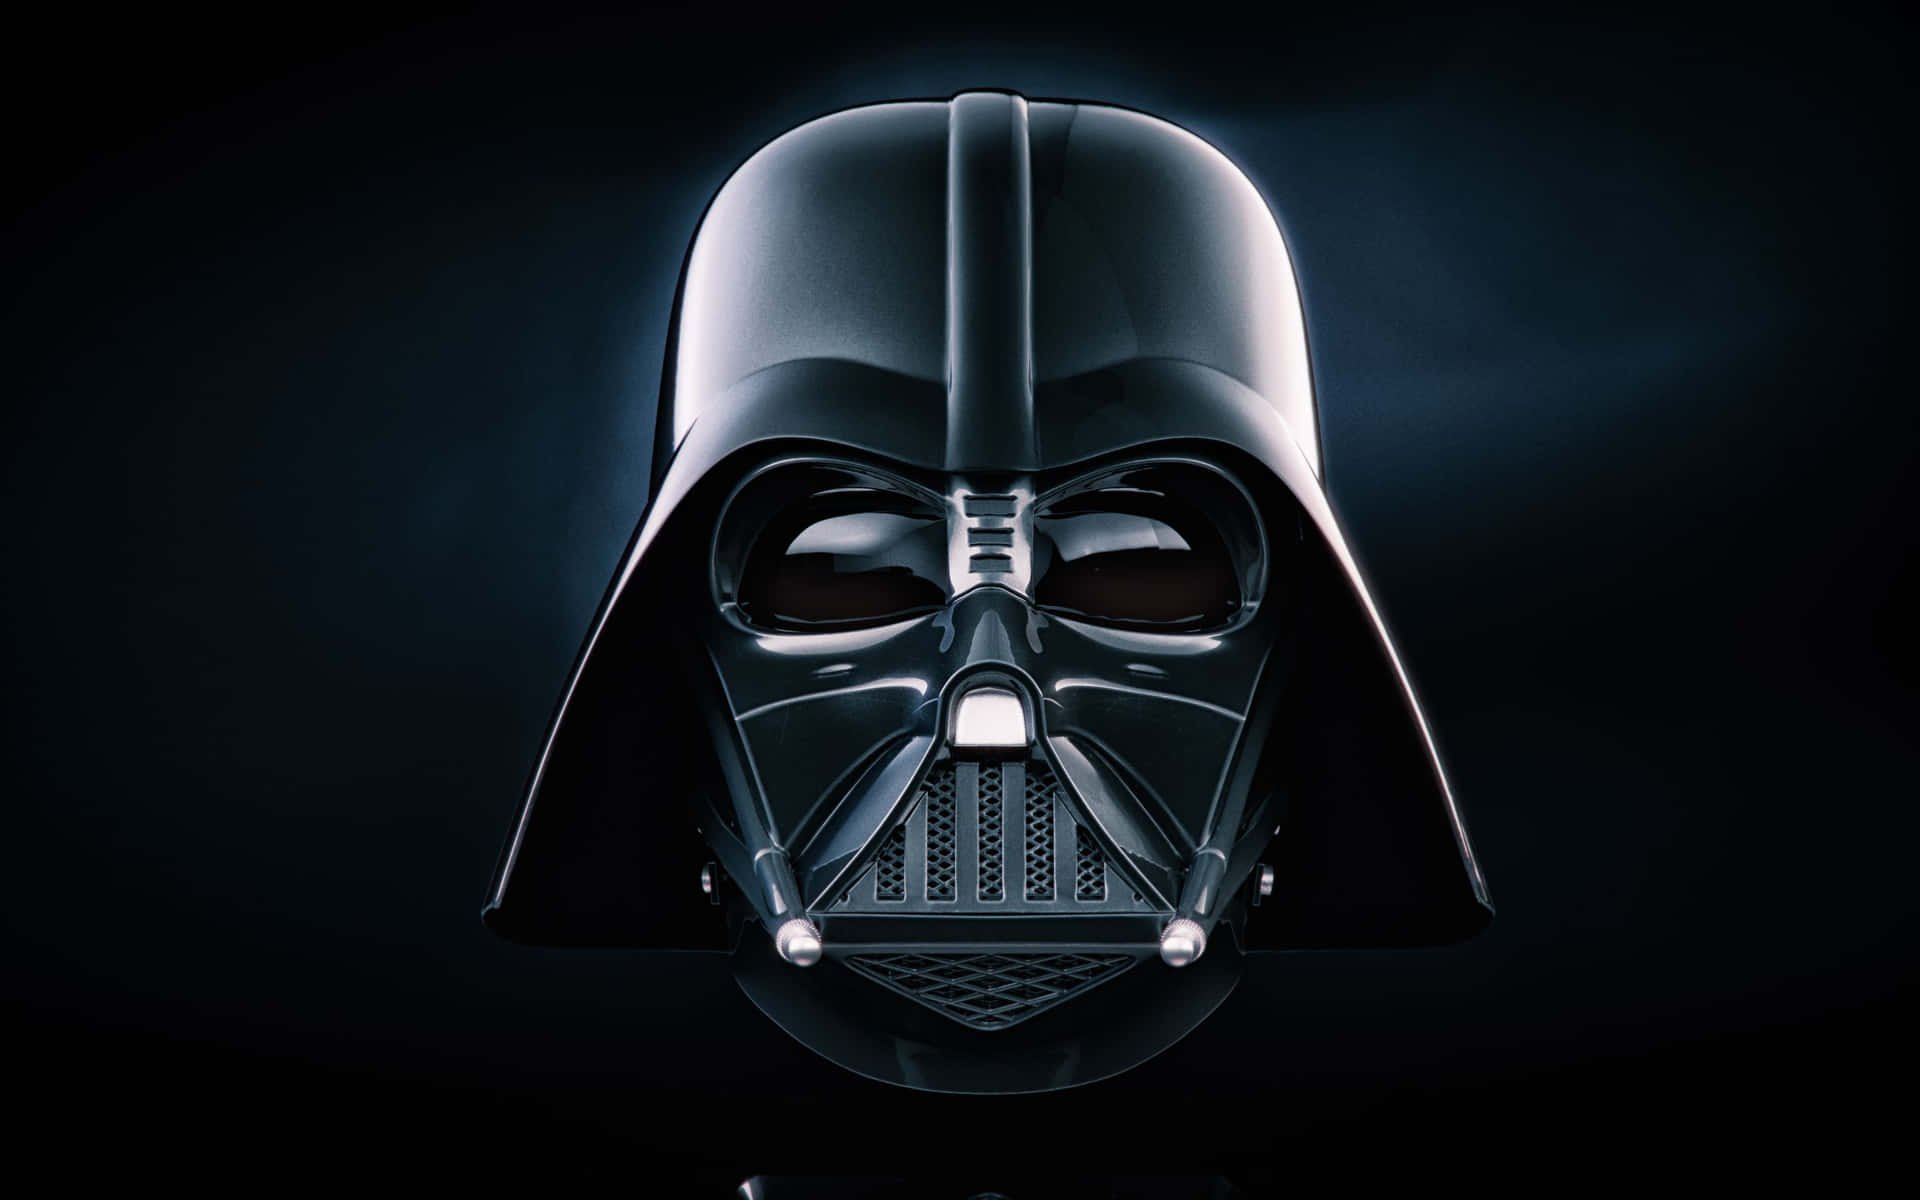 Billedeaf Darth Vader, Den Legendariske Sith Lord.